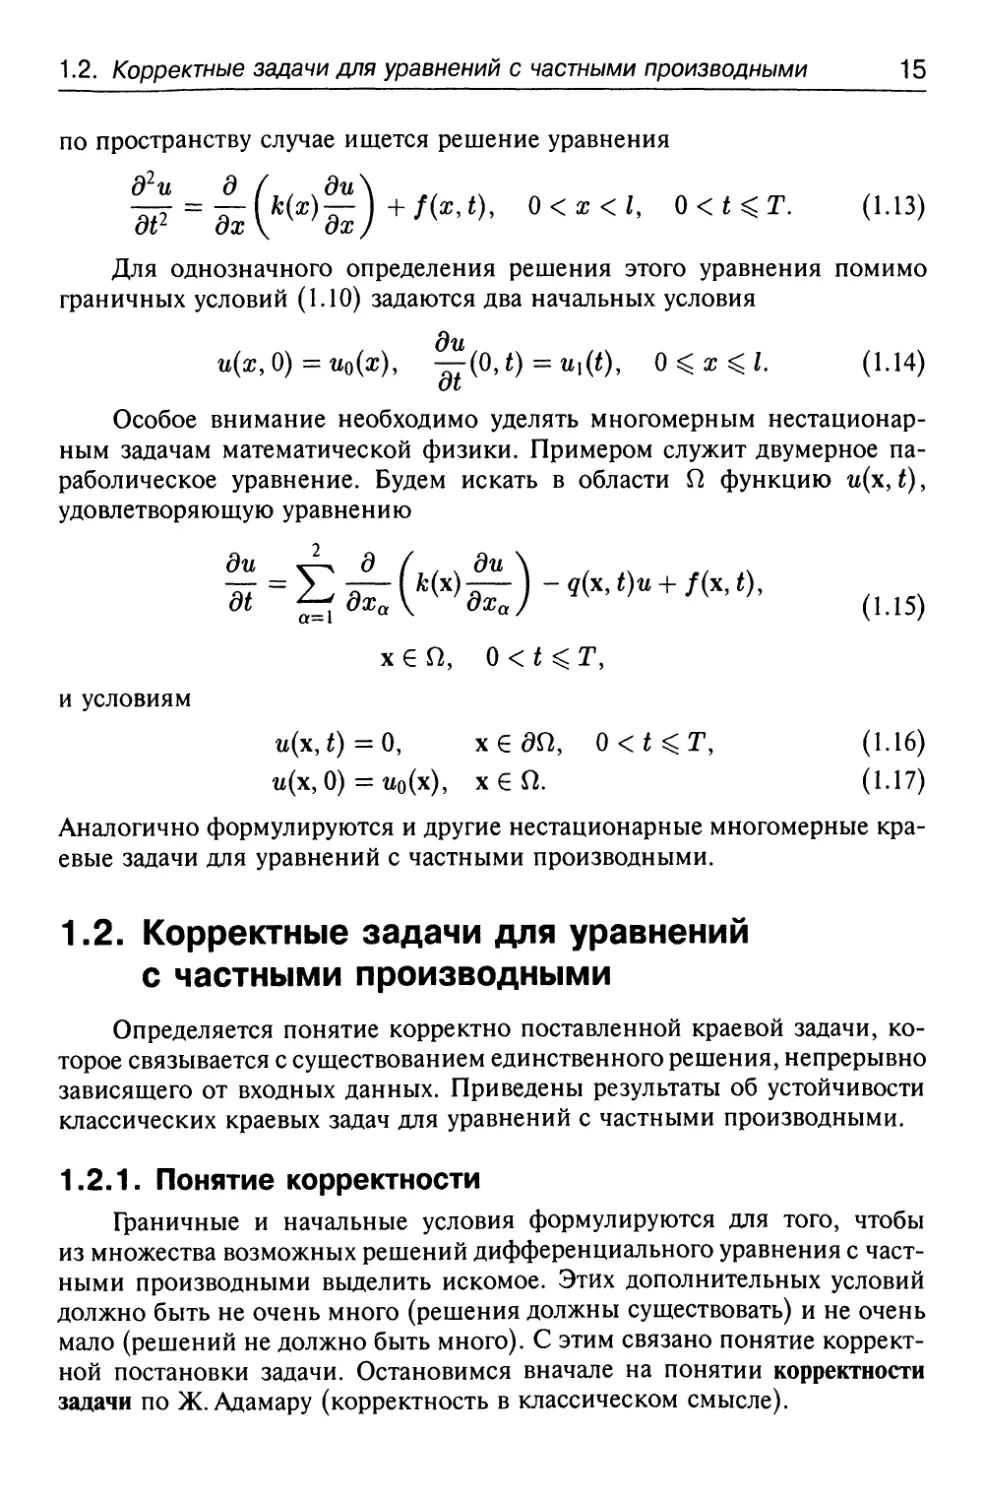 1.2. Корректные задачи для уравнений с частными производными